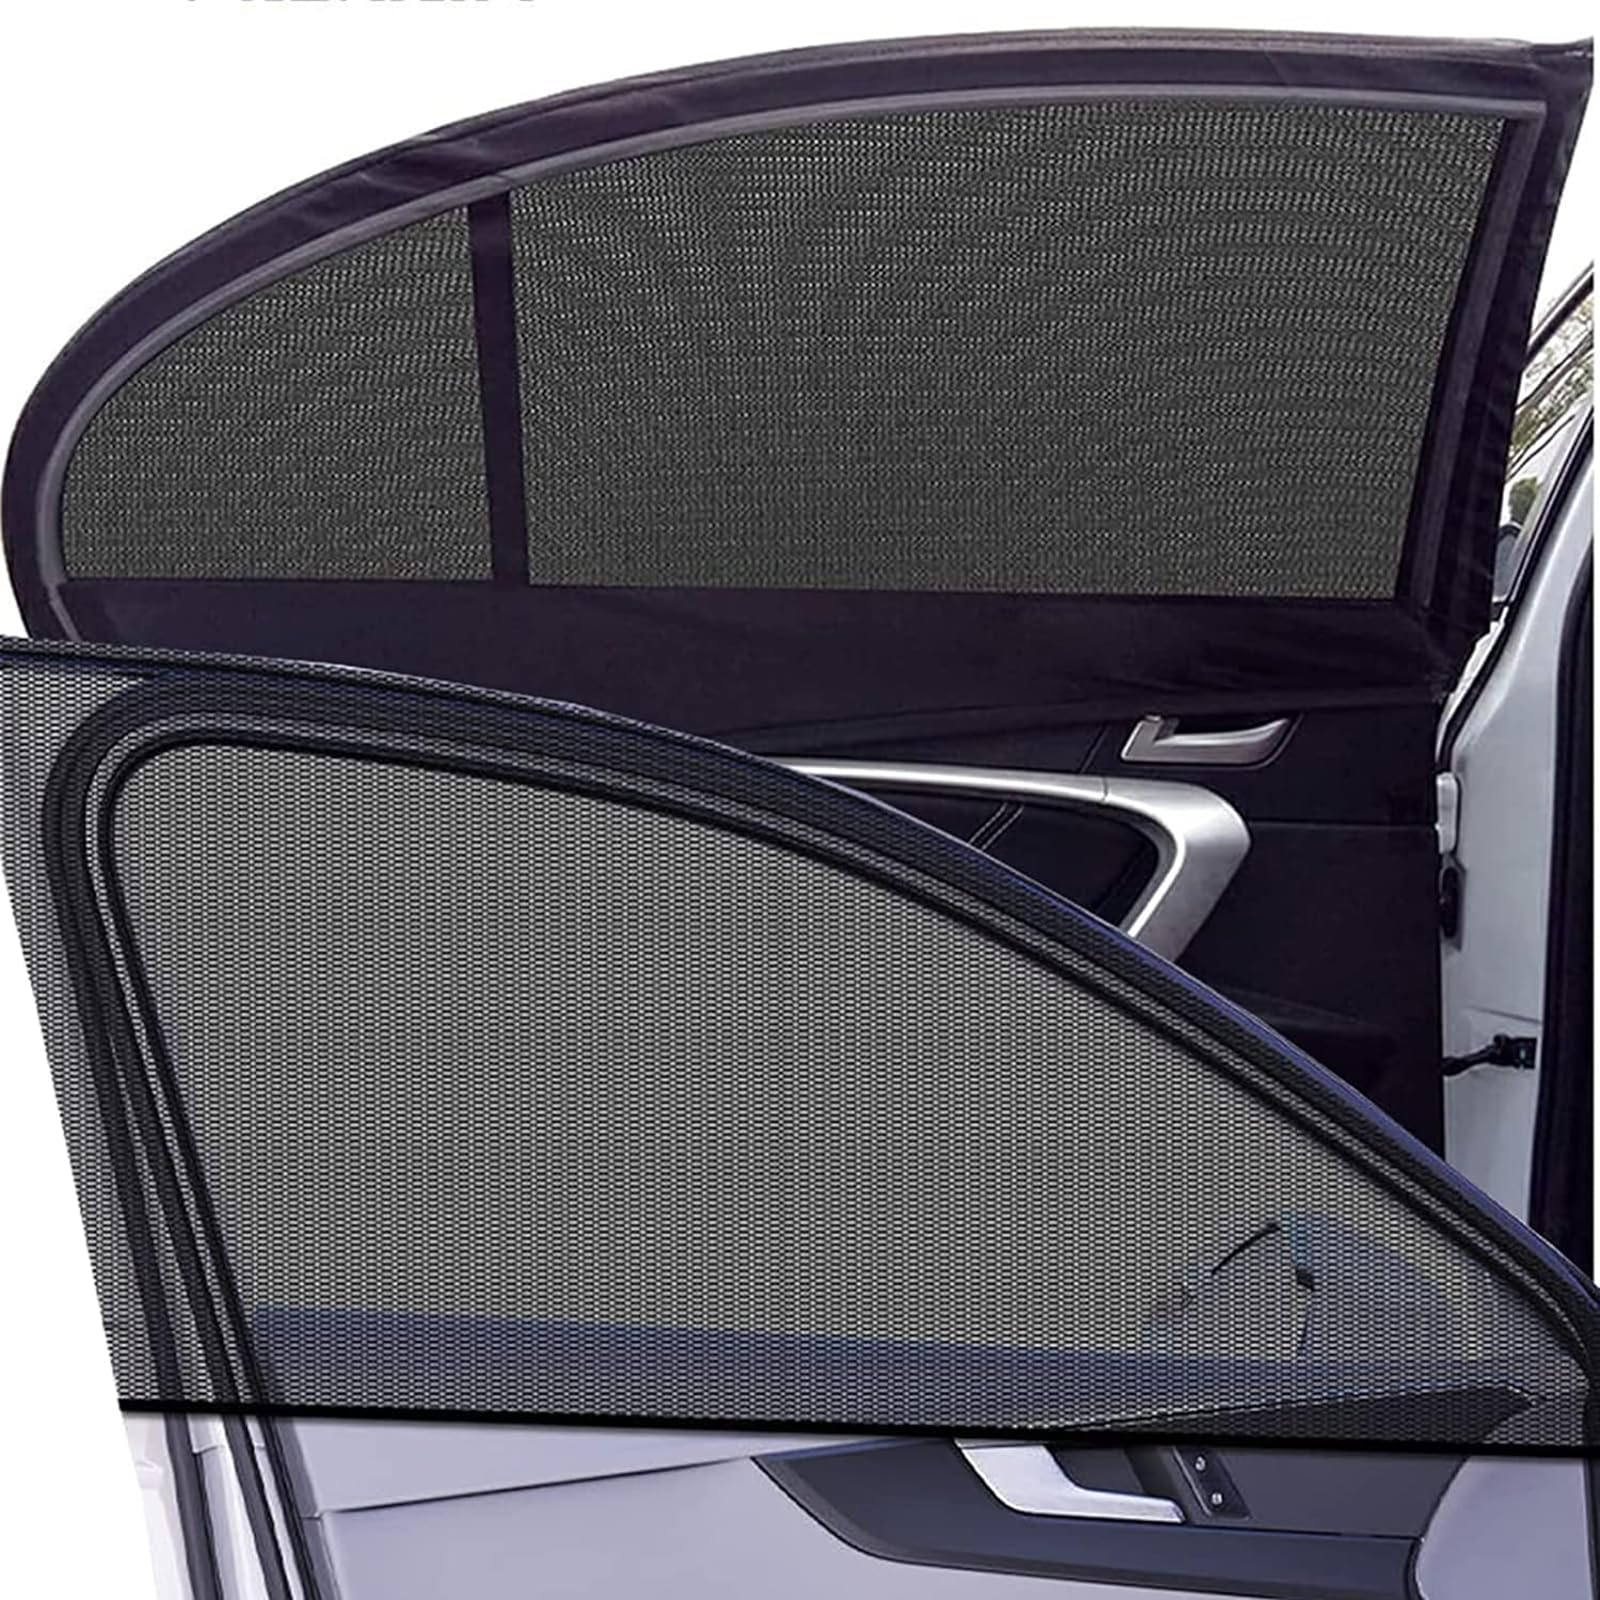 2 Stück Sonnenschutz Auto Baby Für VW Crafter 2017+, Universal Auto Sonnenblende Seitenfenster Atmungsaktive Netz UV-Schutz und Hitzeschutz Zubehör von JJNIENUS